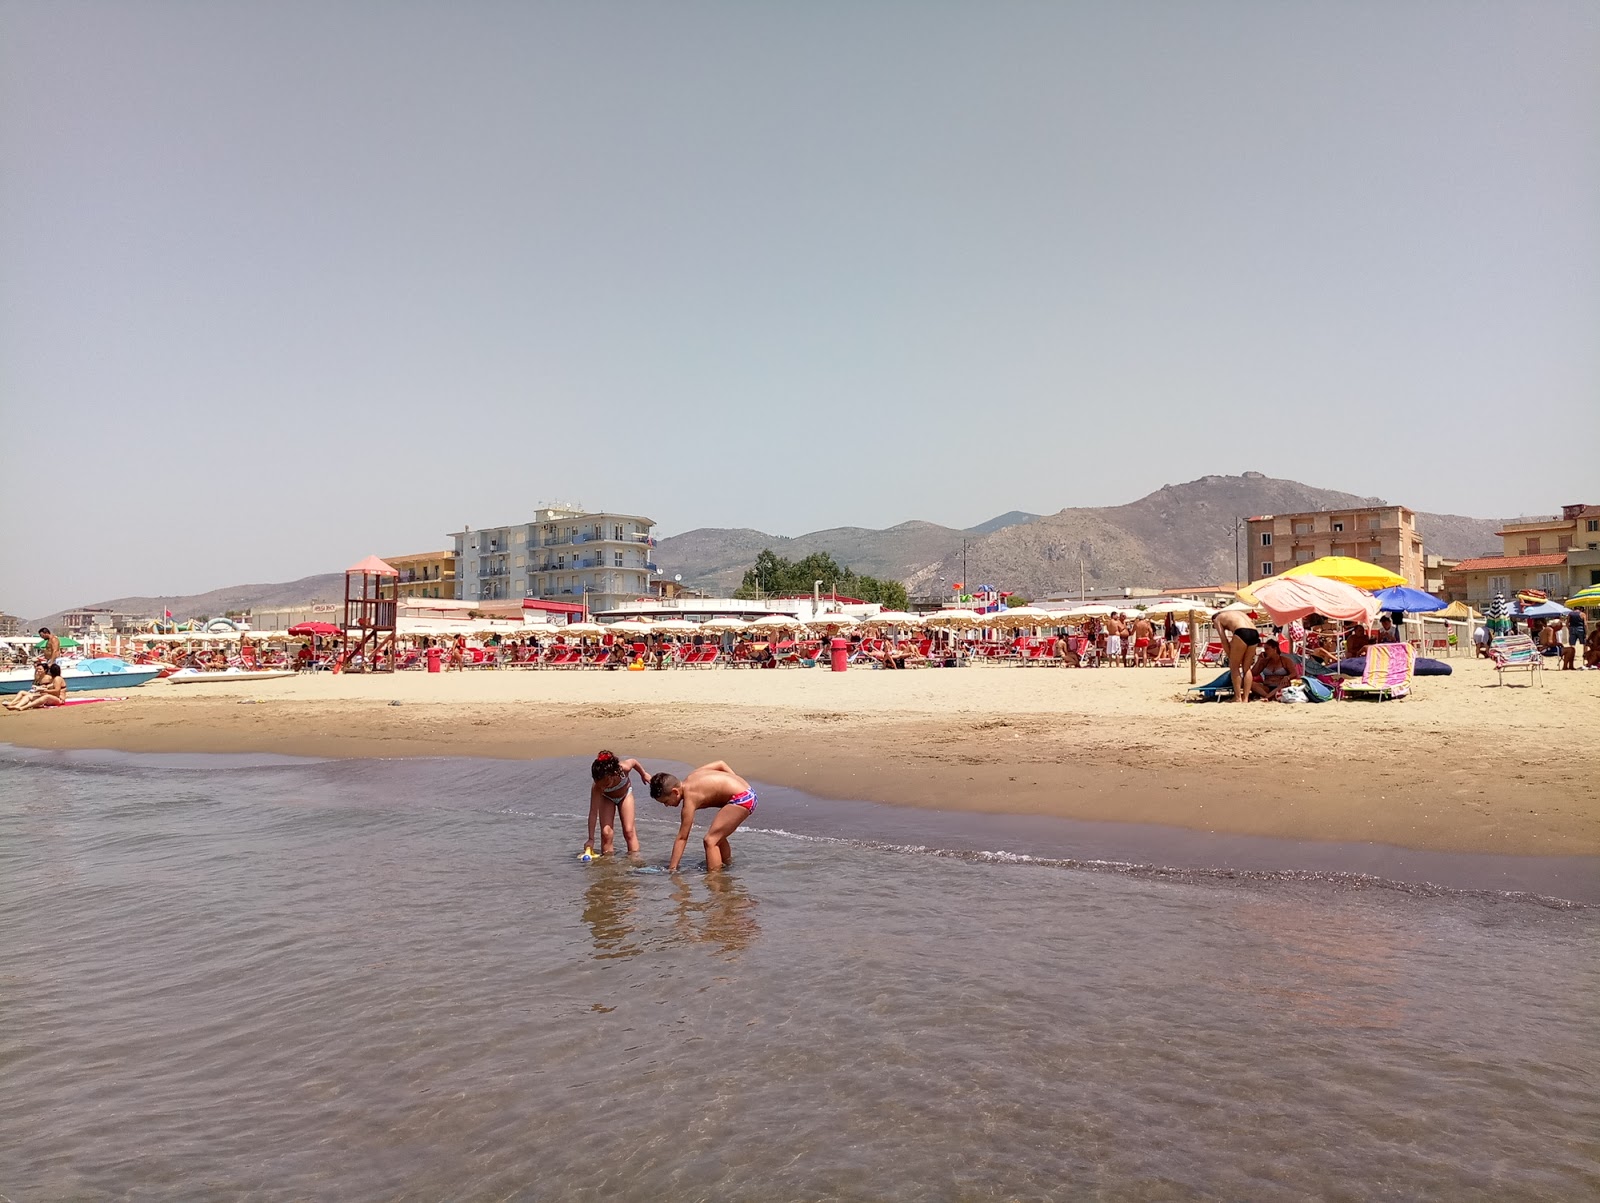 Foto de Spiaggia di Mondragone - lugar popular entre los conocedores del relax